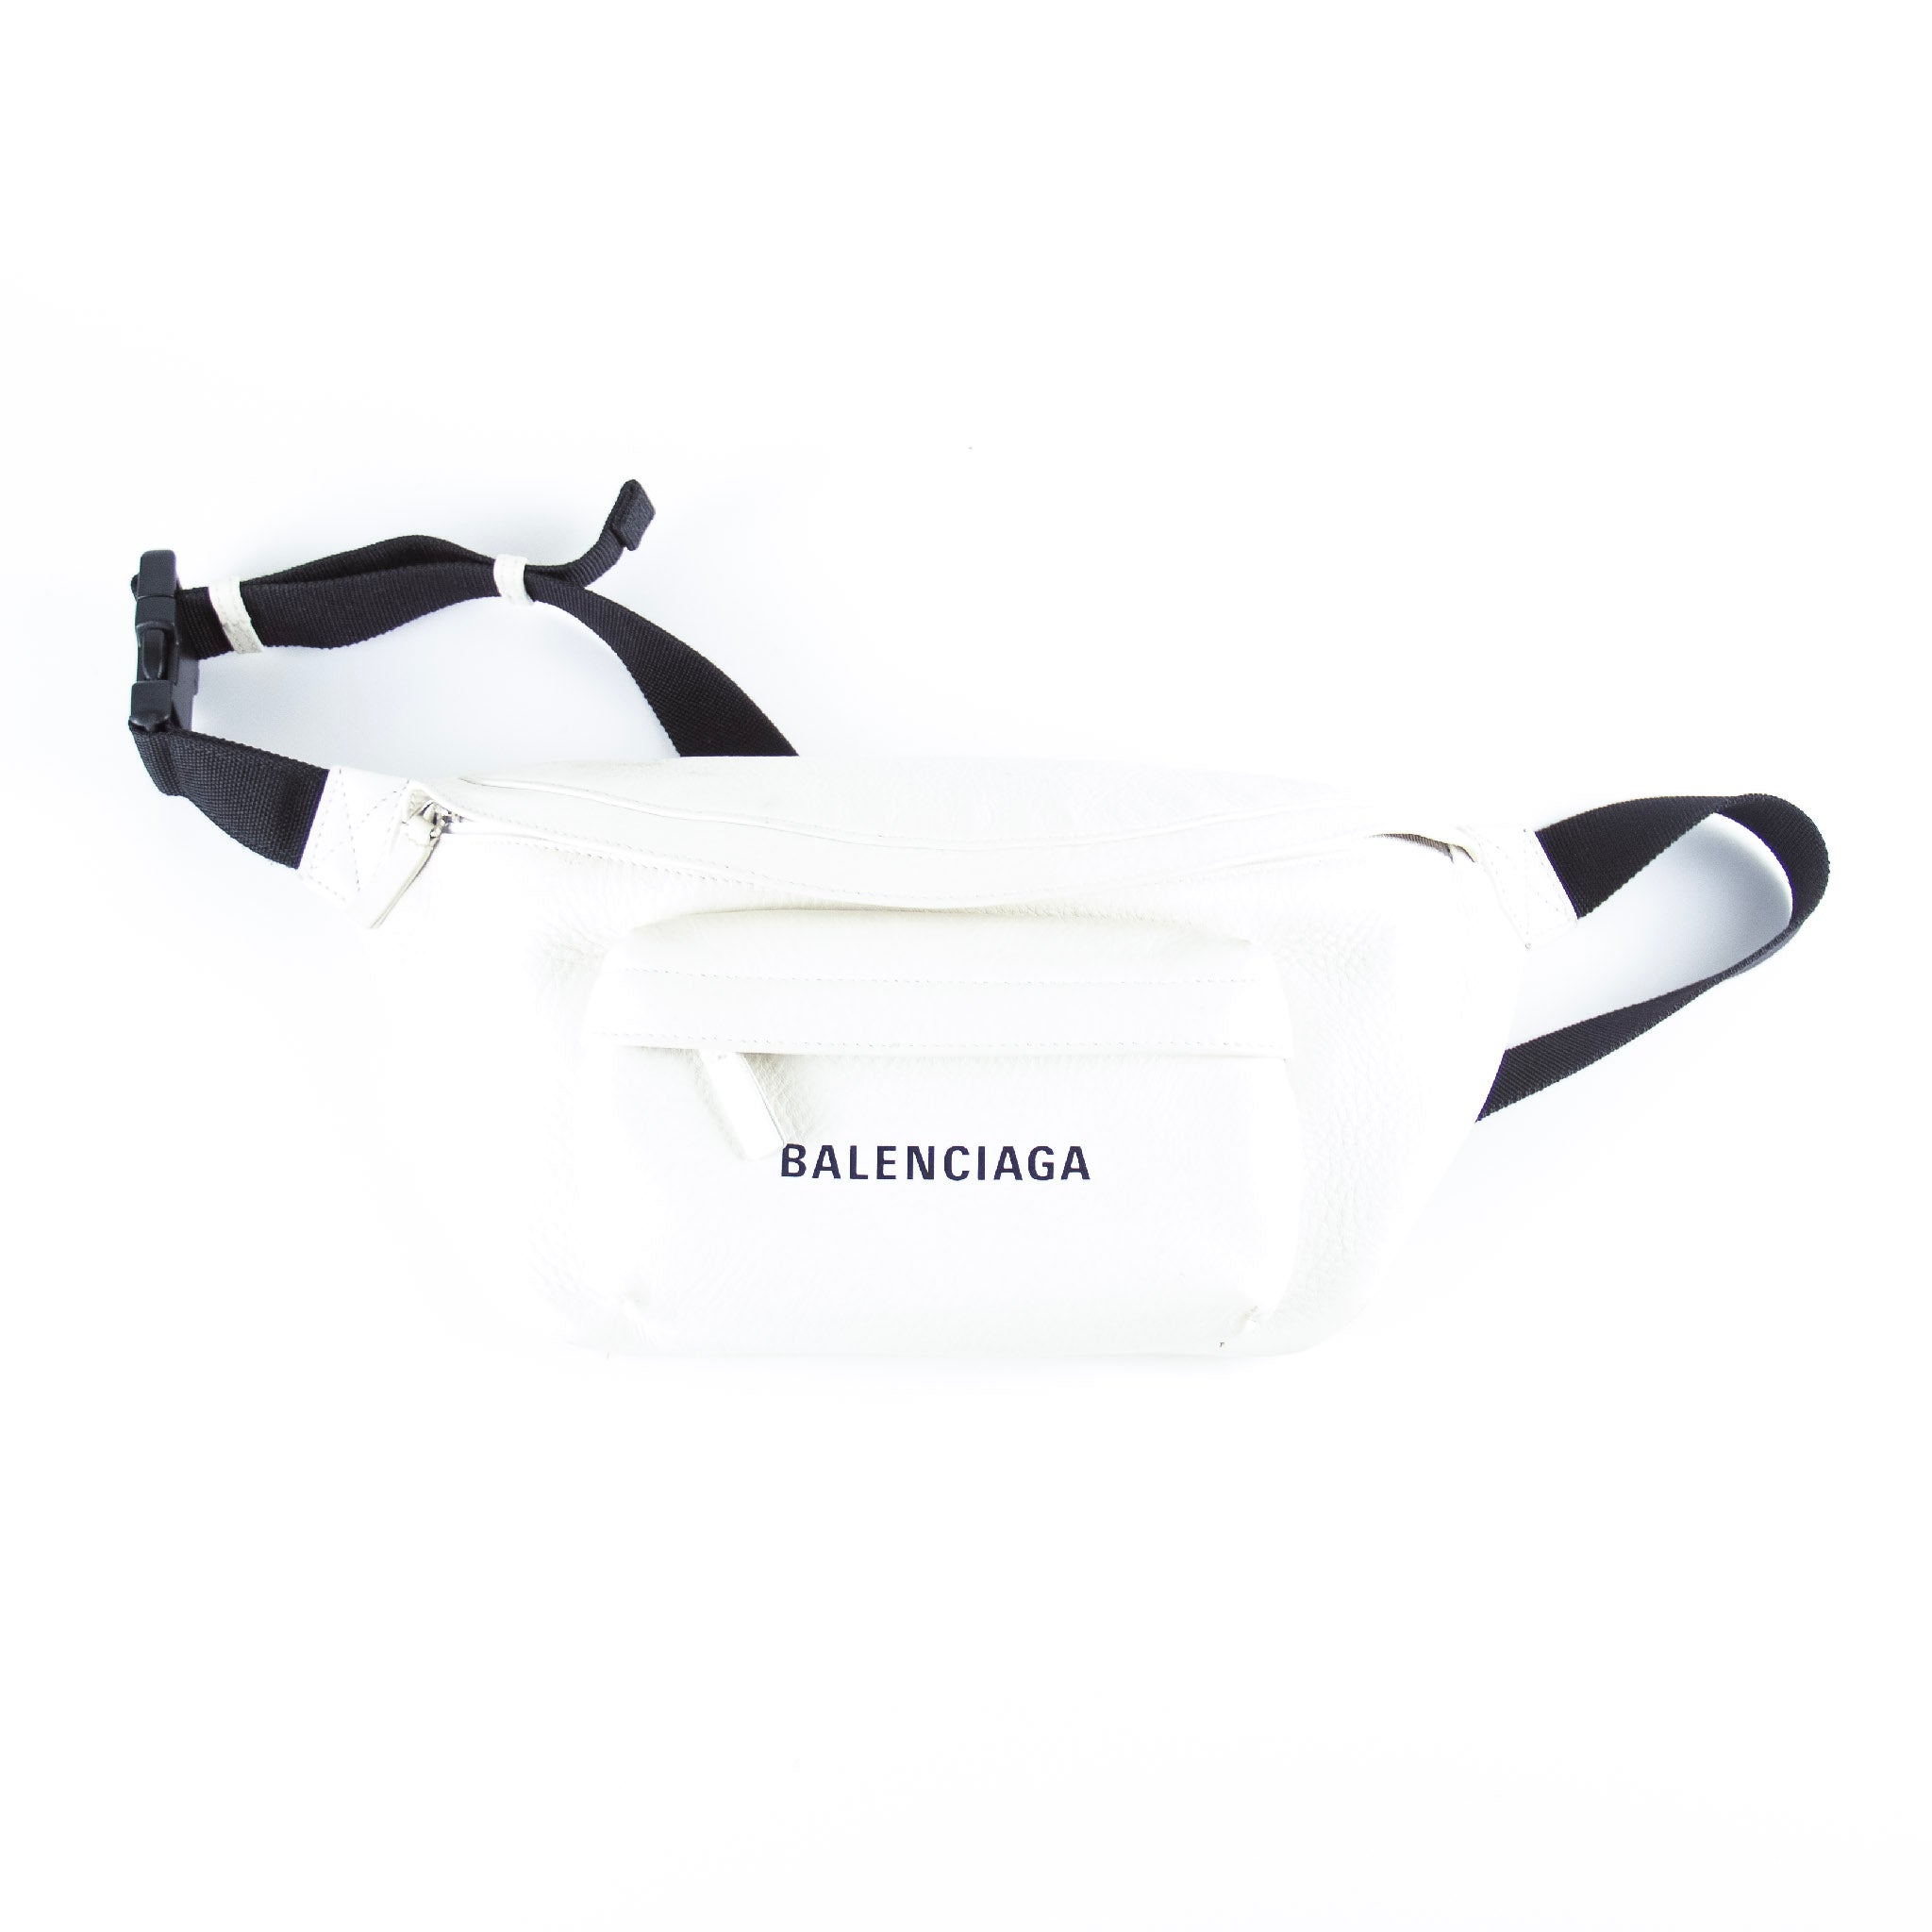 Billede af Balenciaga White Everyday Leather Belt Bag